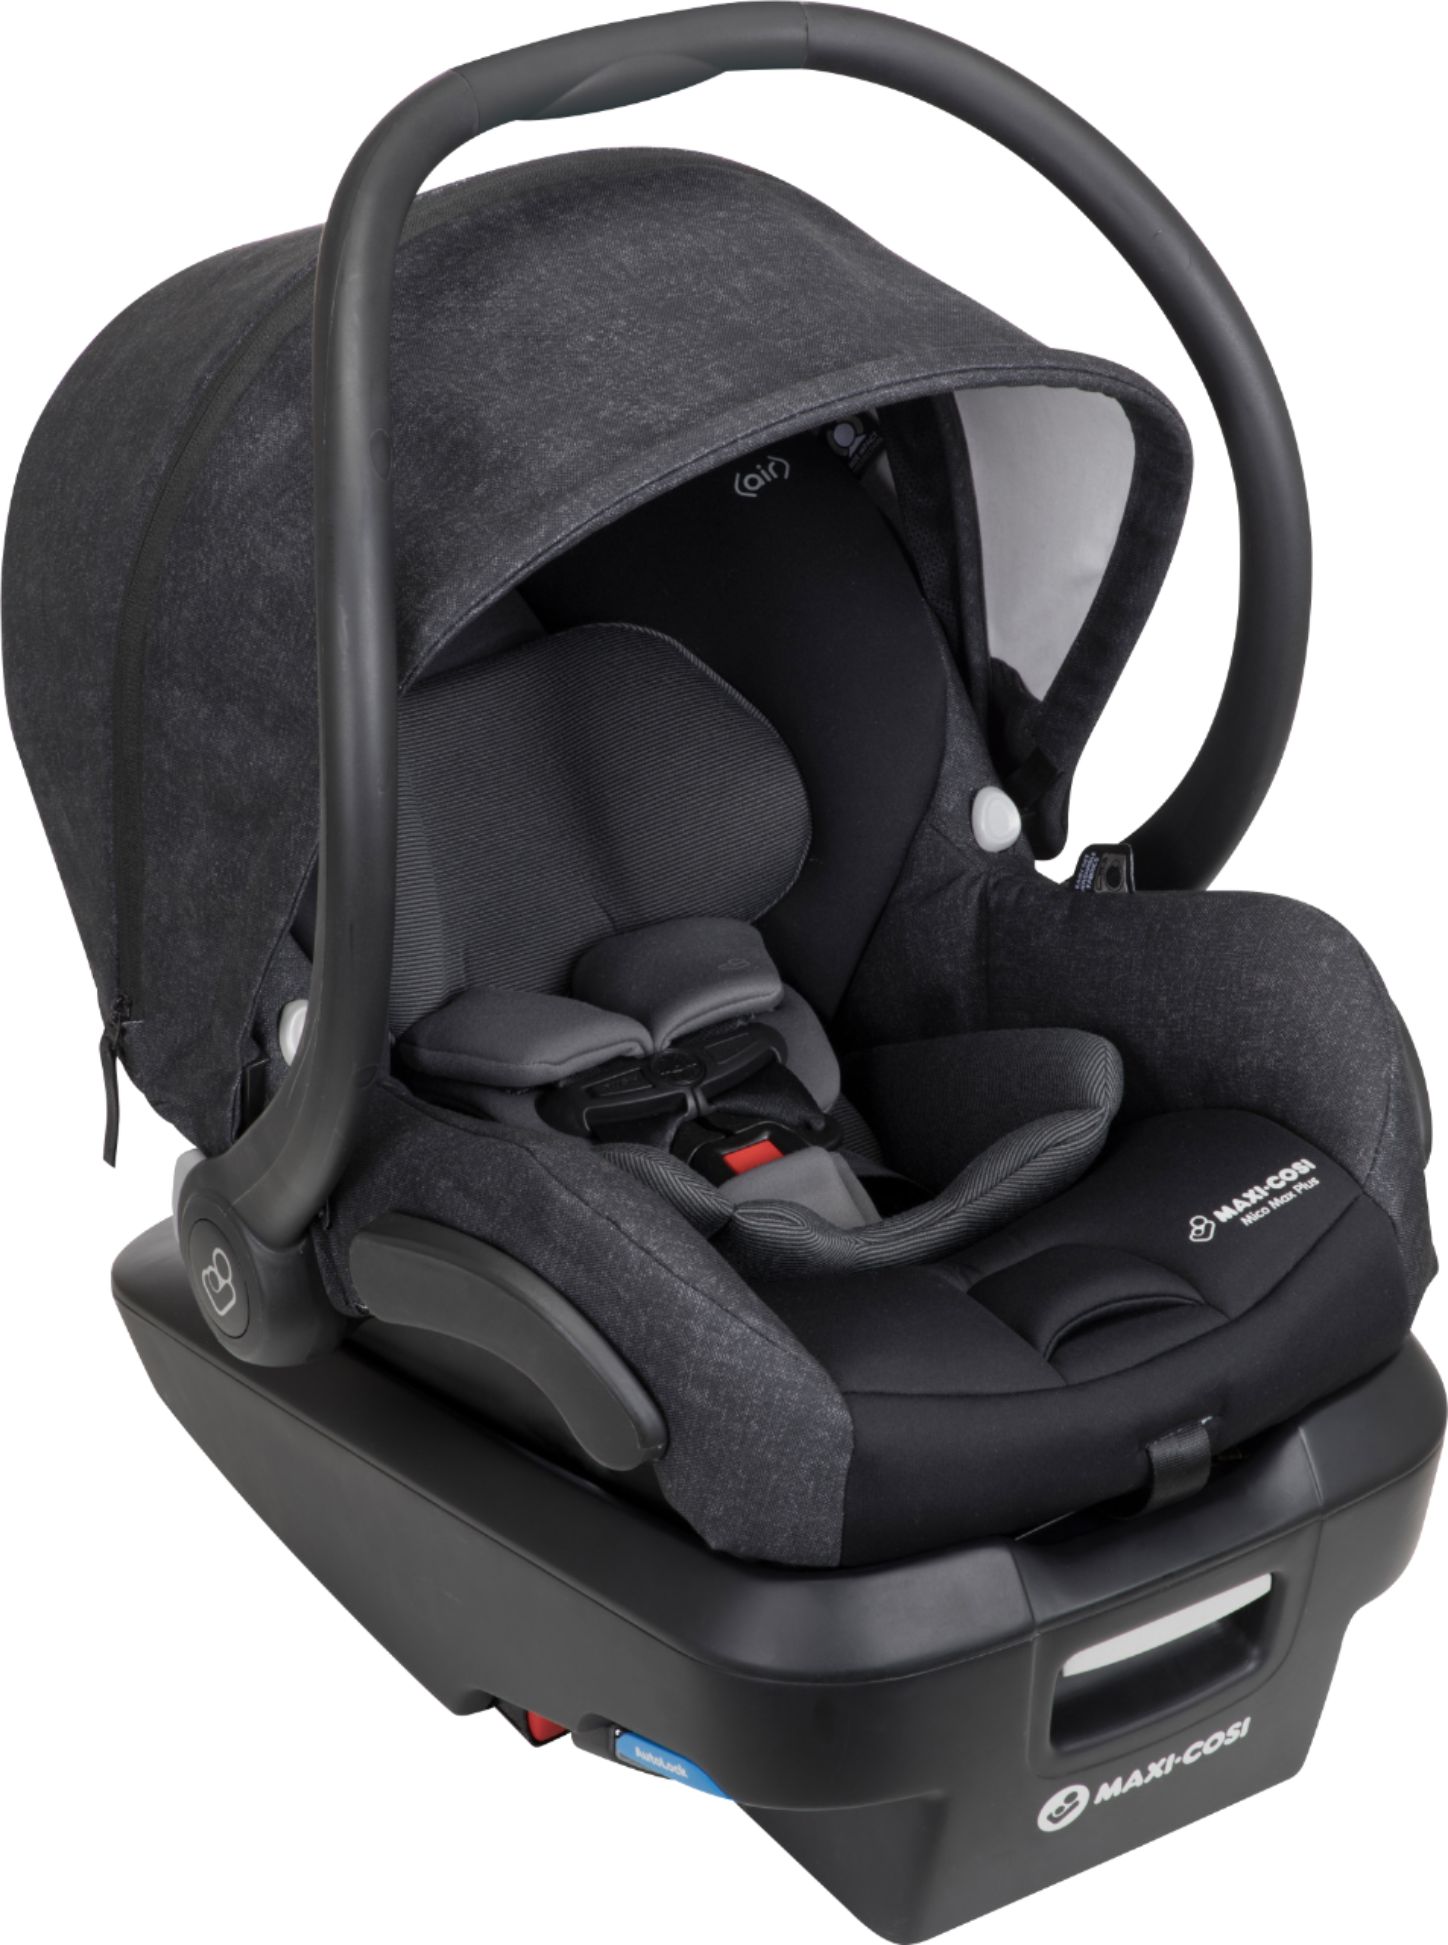 Best Maxi Cosi Mico Max Plus Infant Car Seat Black Ic306etk - Maxi Cosi Baby Car Seat Maximum Weight